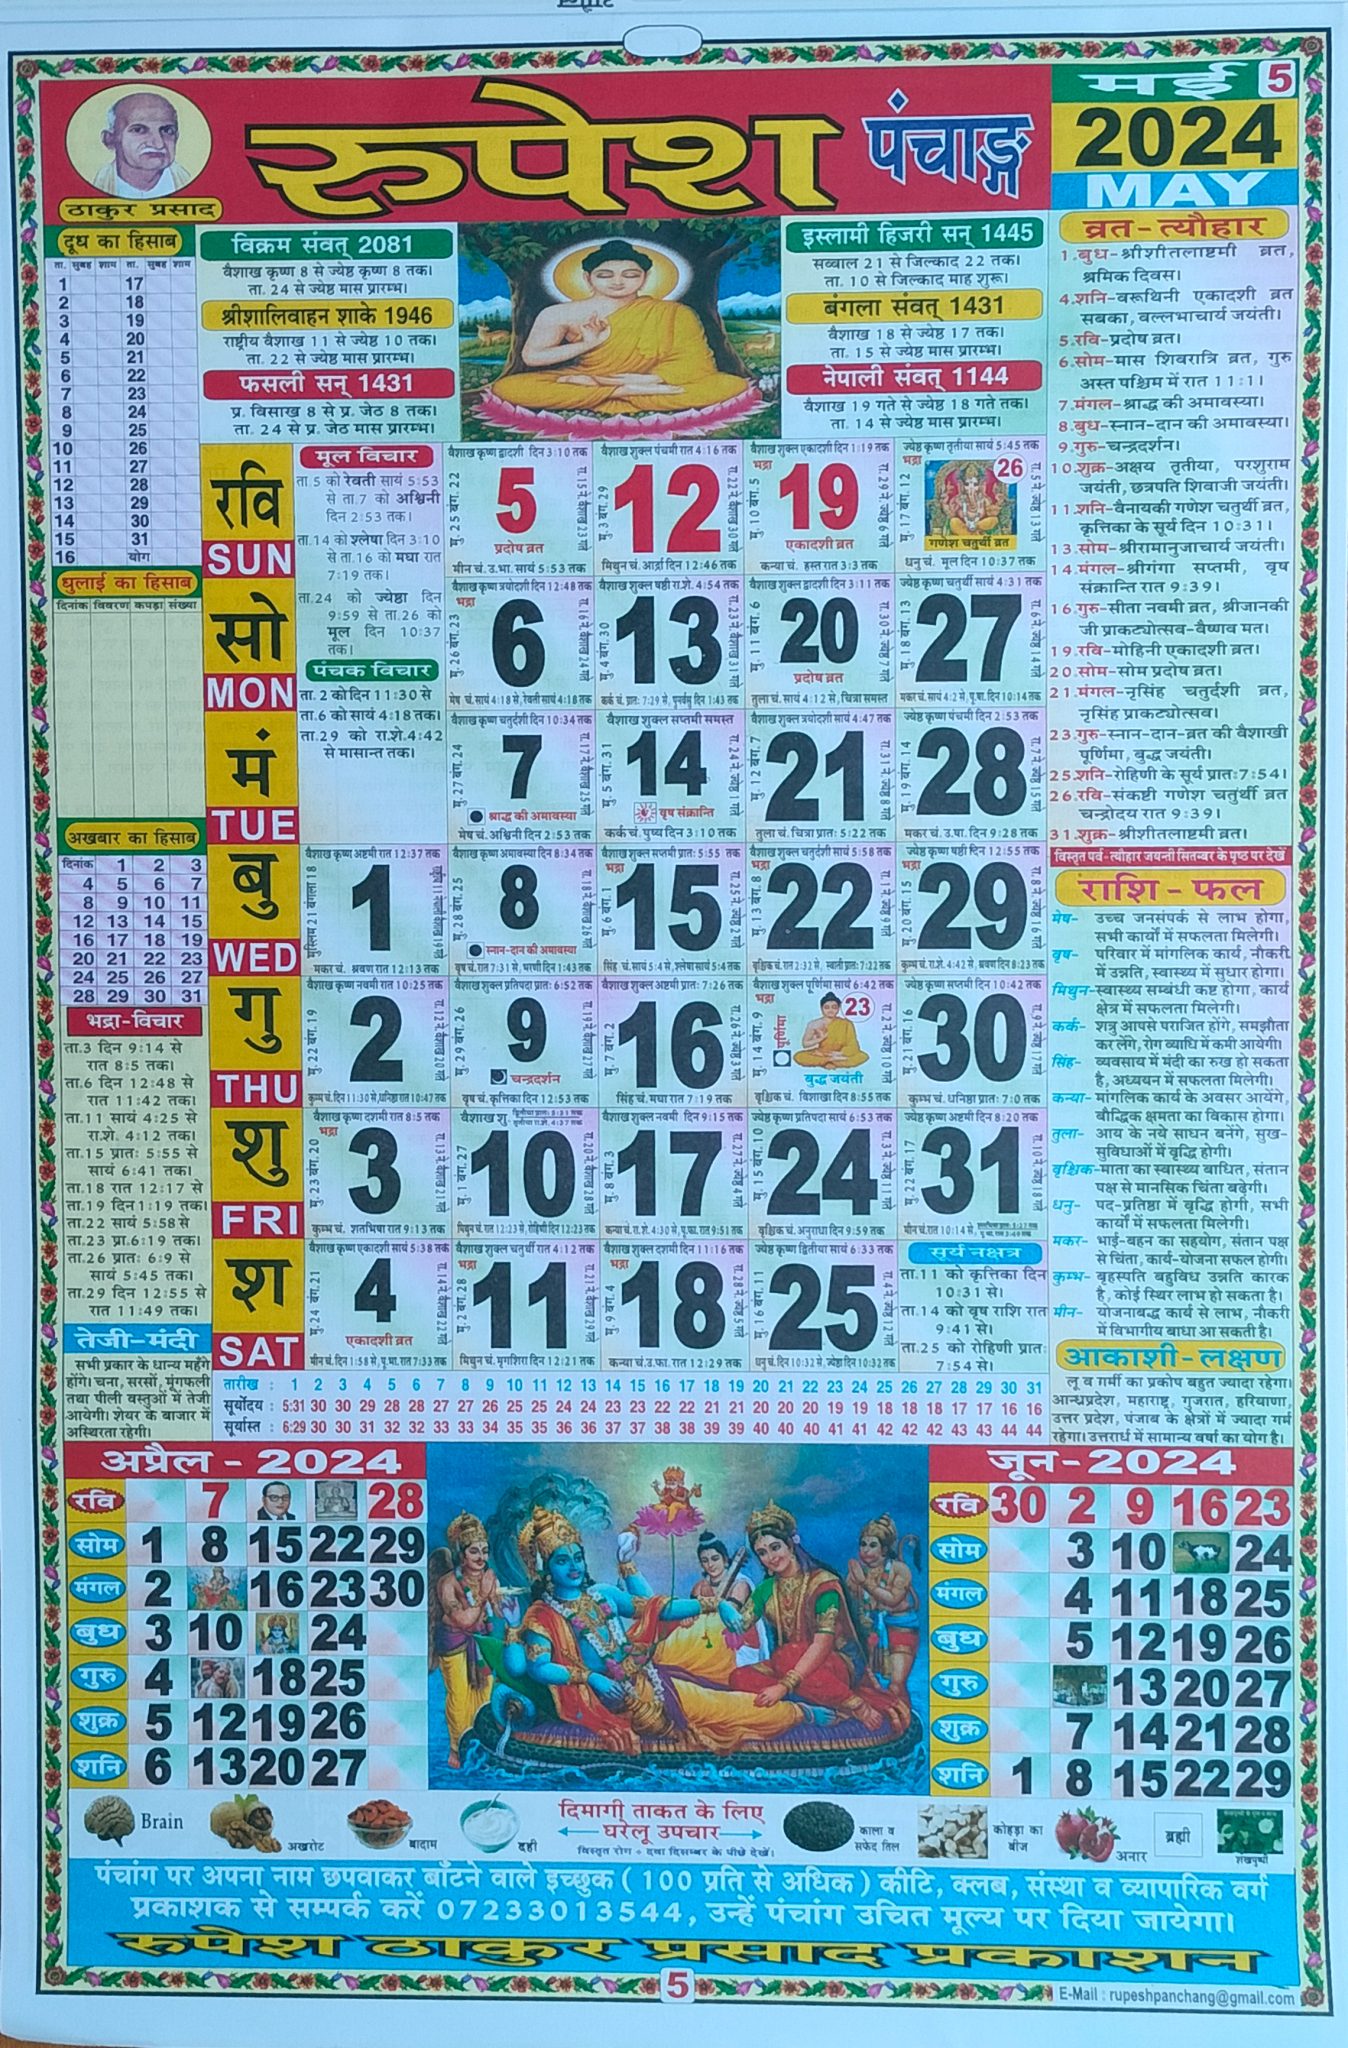 Thakur Prasad Calendar 2024, ठाकुर प्रसाद कैलेंडर 2024 PDF Download